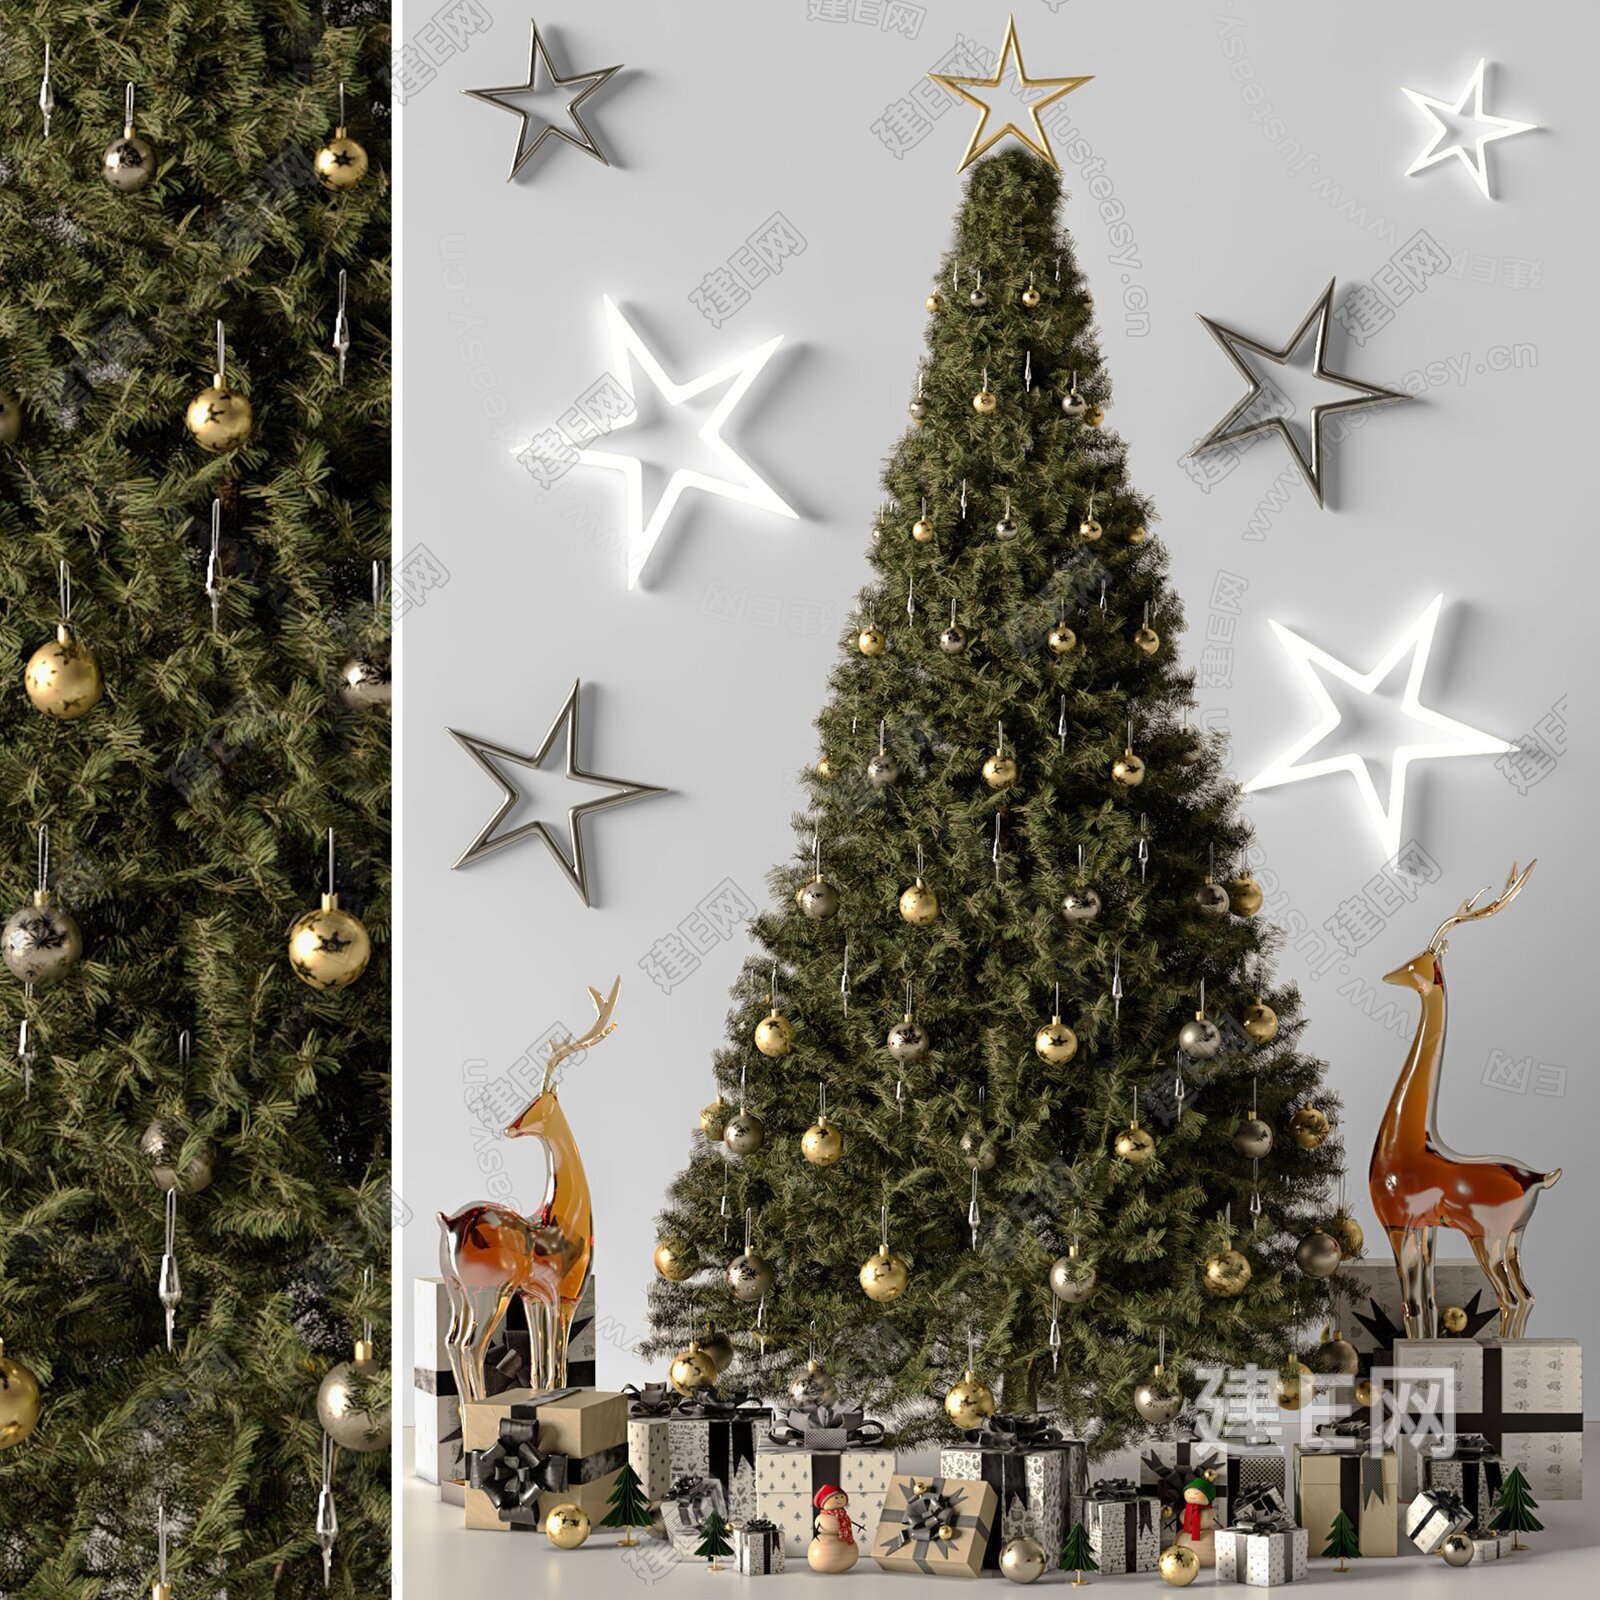 定制大型圣诞树 厂家10m圣诞树 户外大型圣诞树 铁艺圣诞专业定制-阿里巴巴